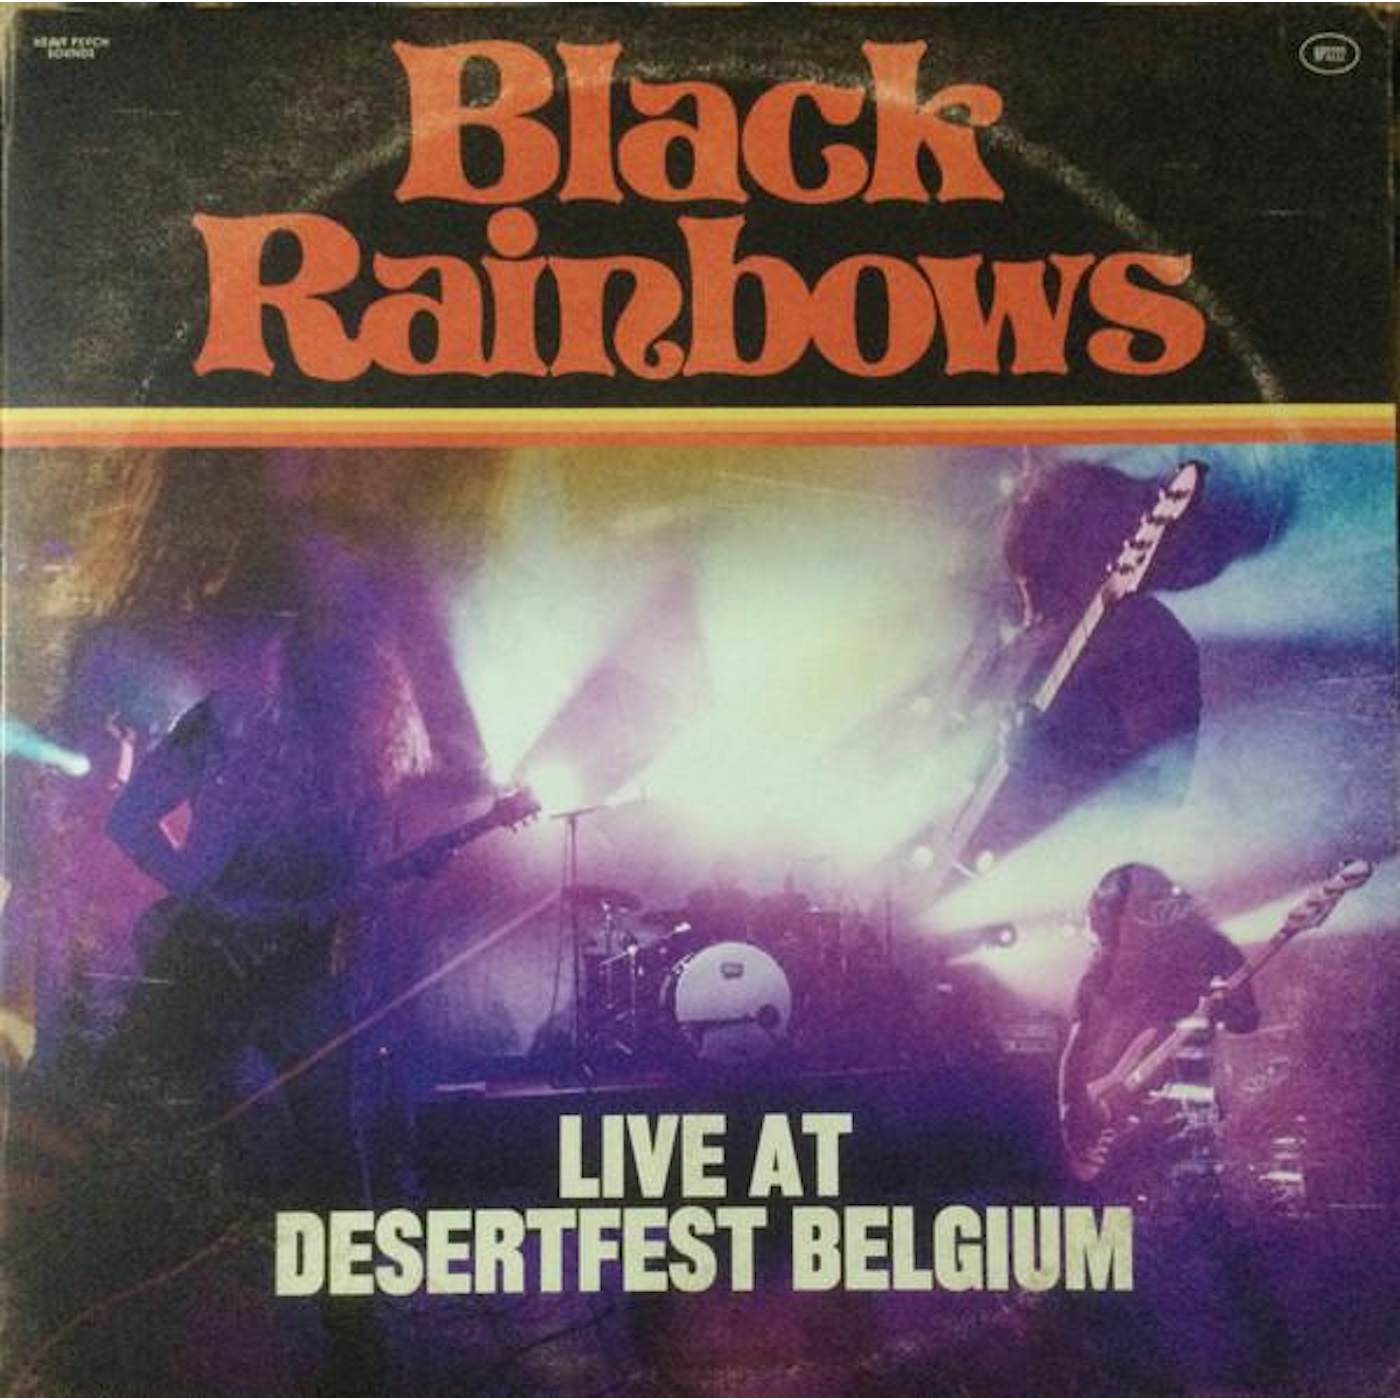 Black Rainbows Live at Desertfest Belgium Vinyl Record